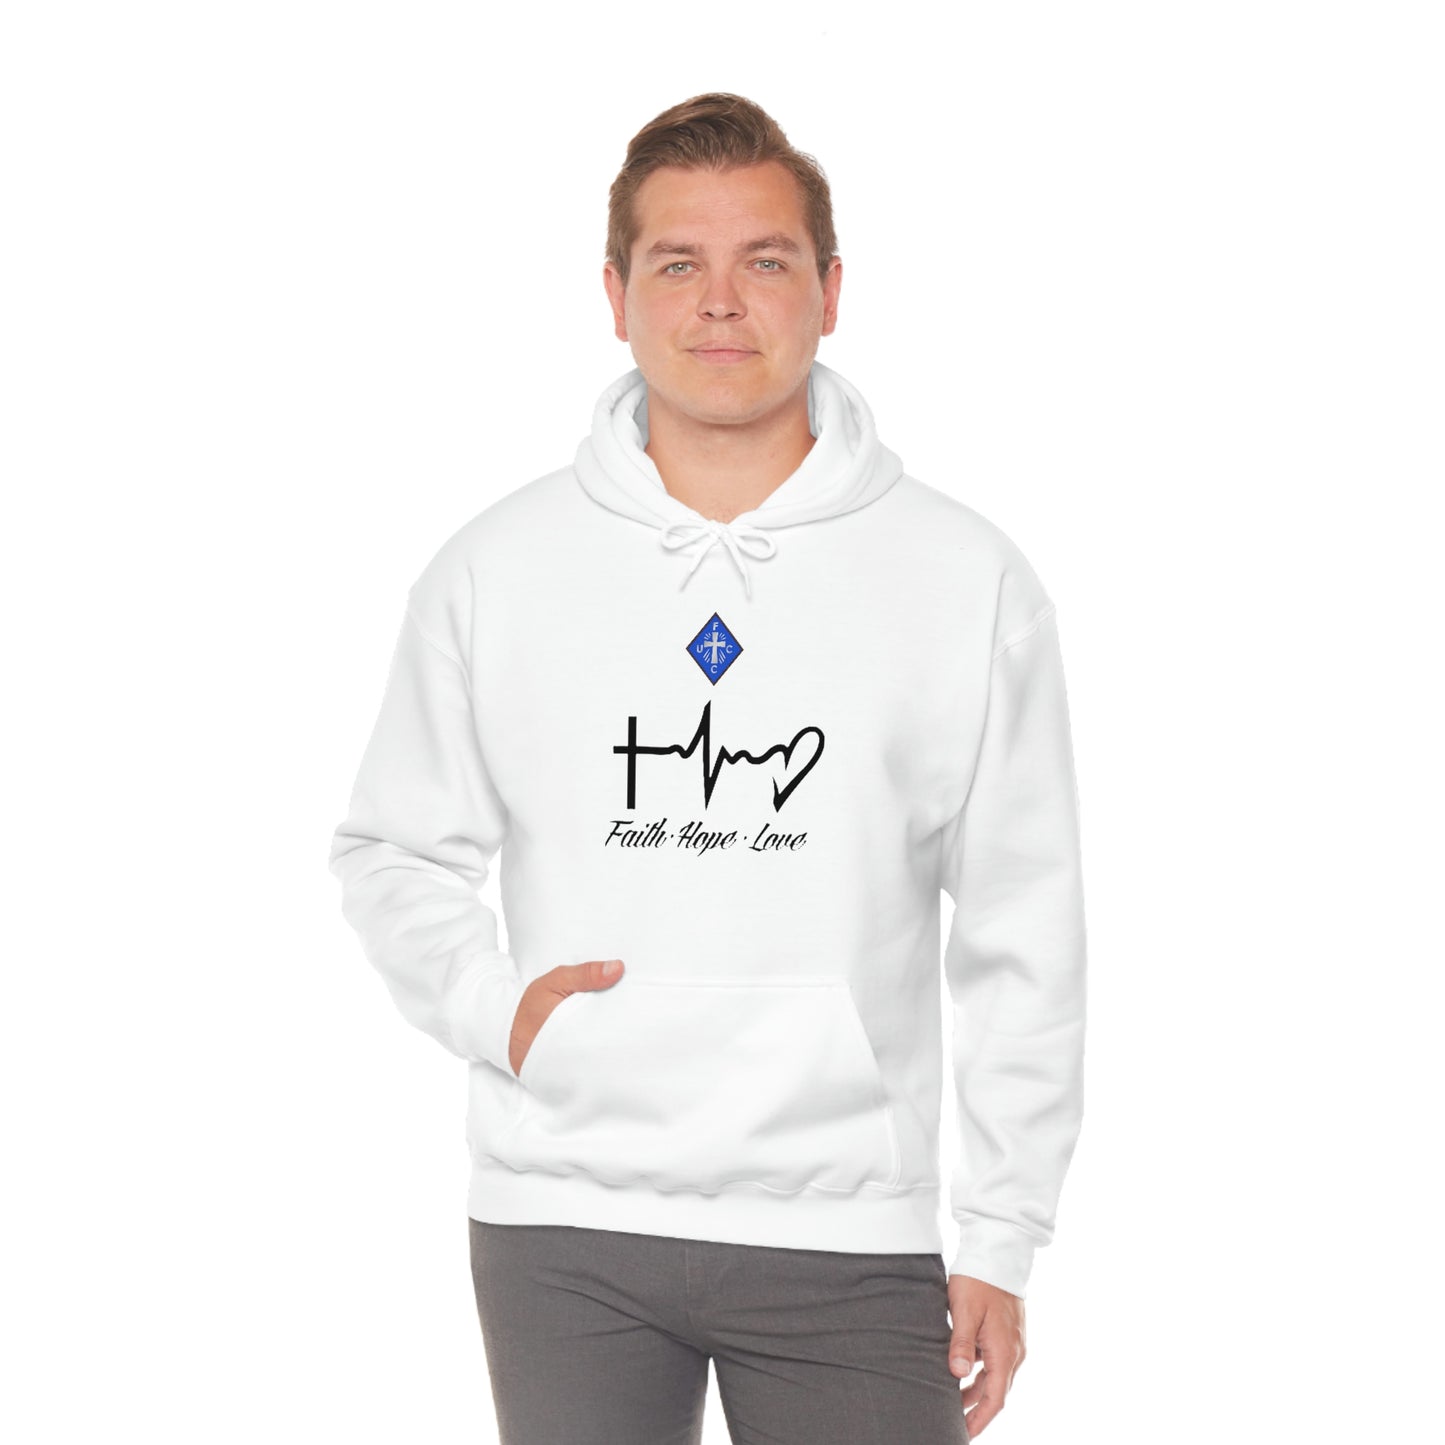 Ladies Faith-Hope-Love Hooded Sweatshirt